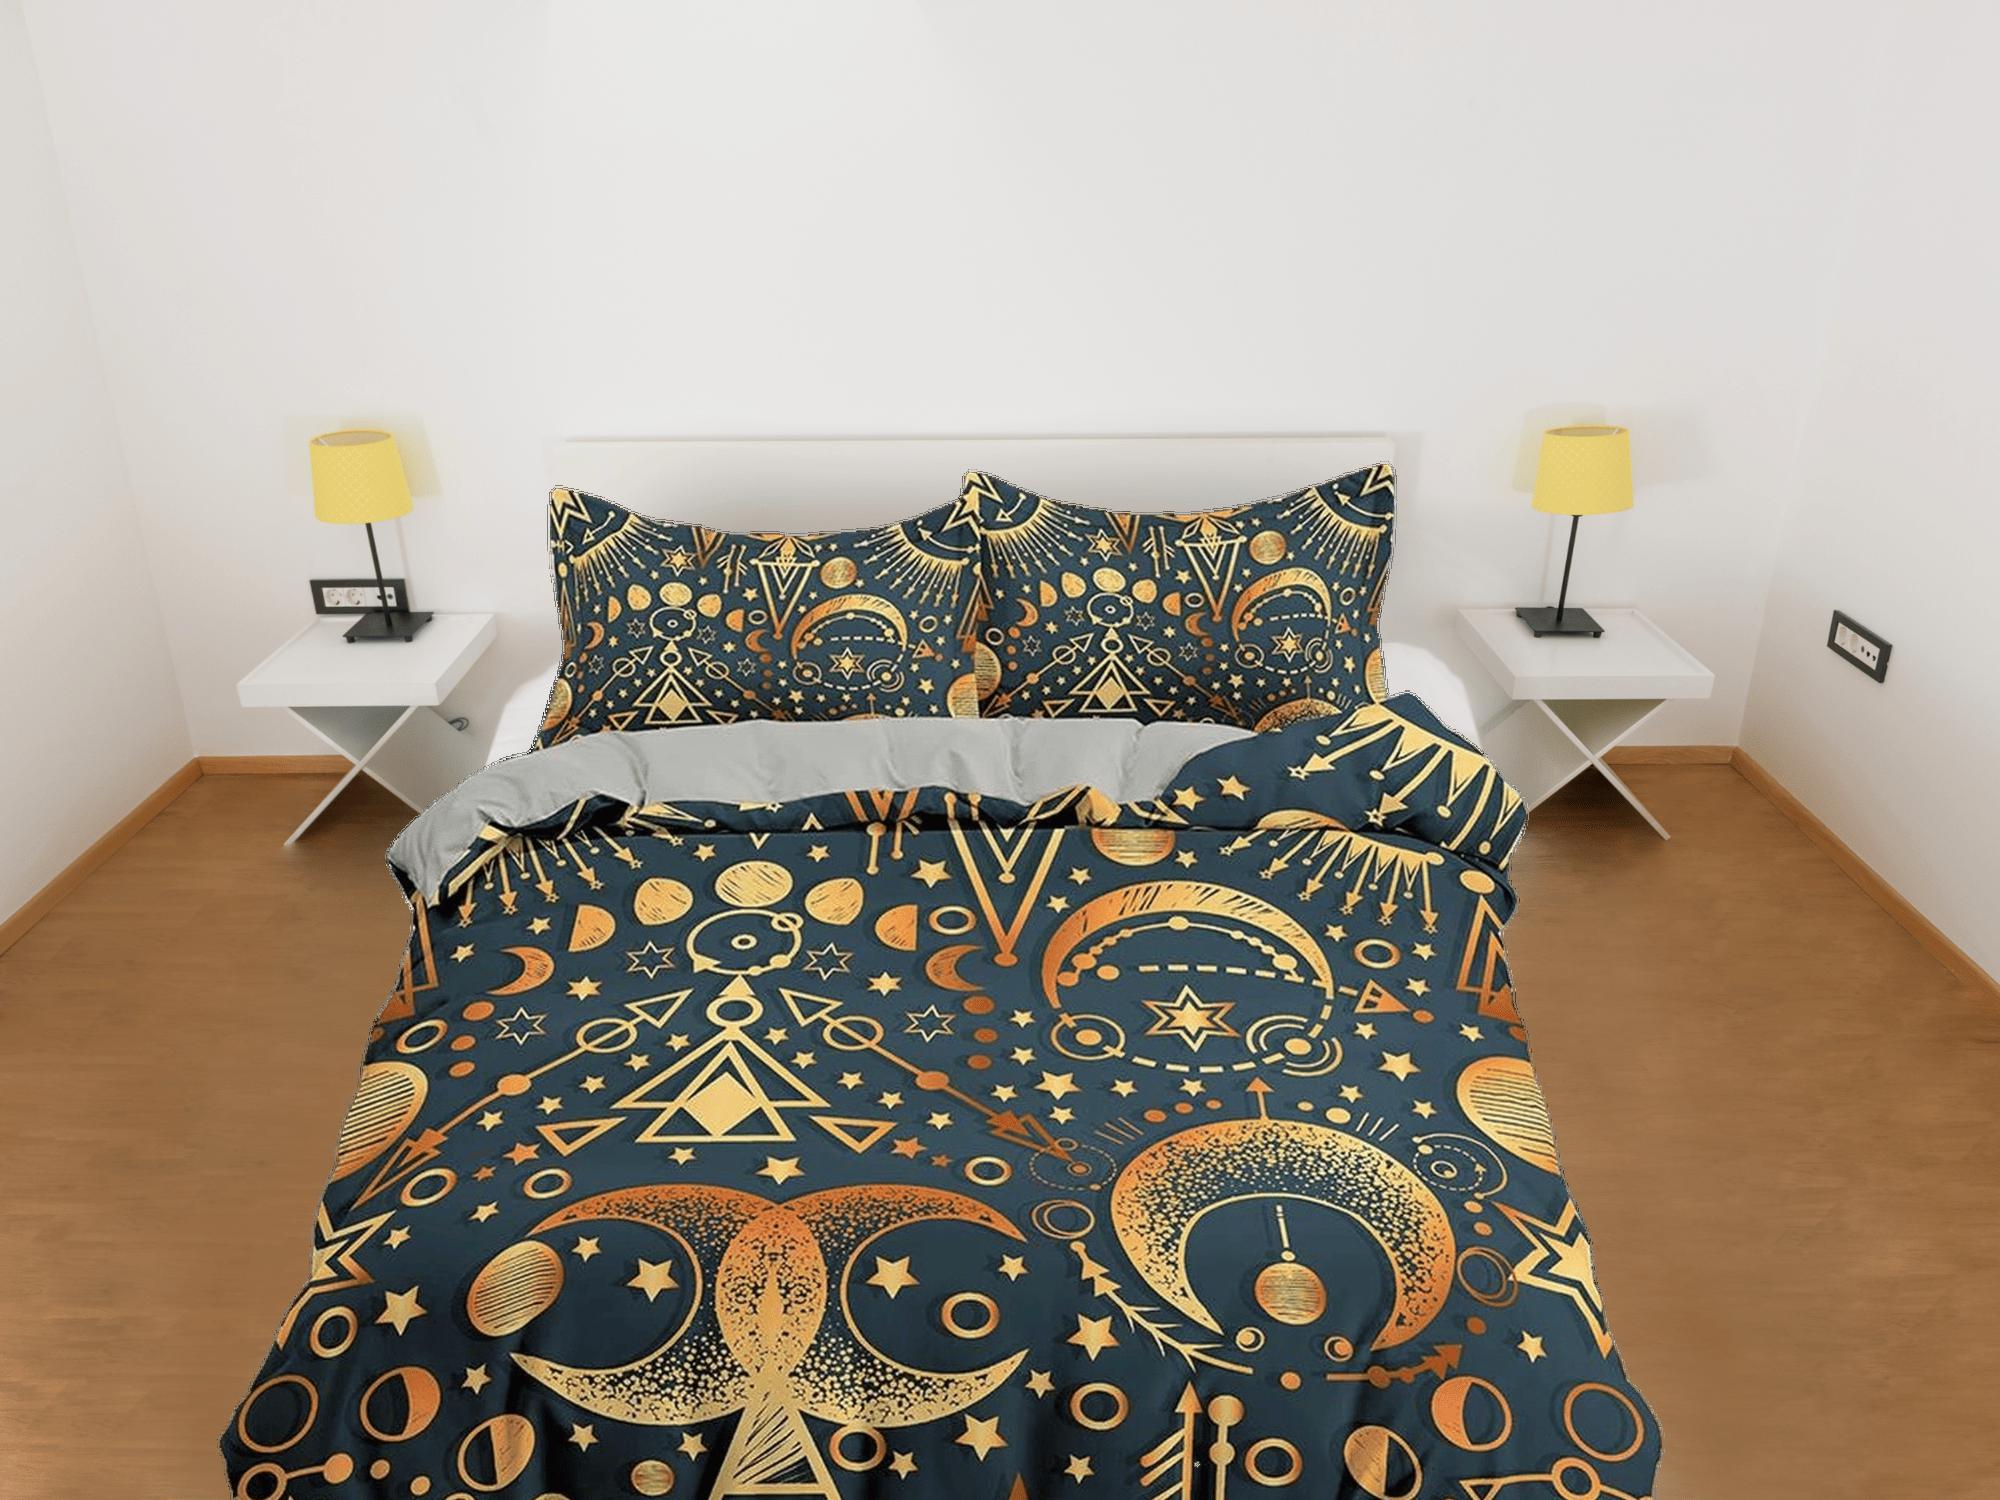 daintyduvet Celestial bedding gold alchemist, witchy decor dorm bedding, aesthetic duvet, boho bedding set full king queen, astrology gifts, gothic art